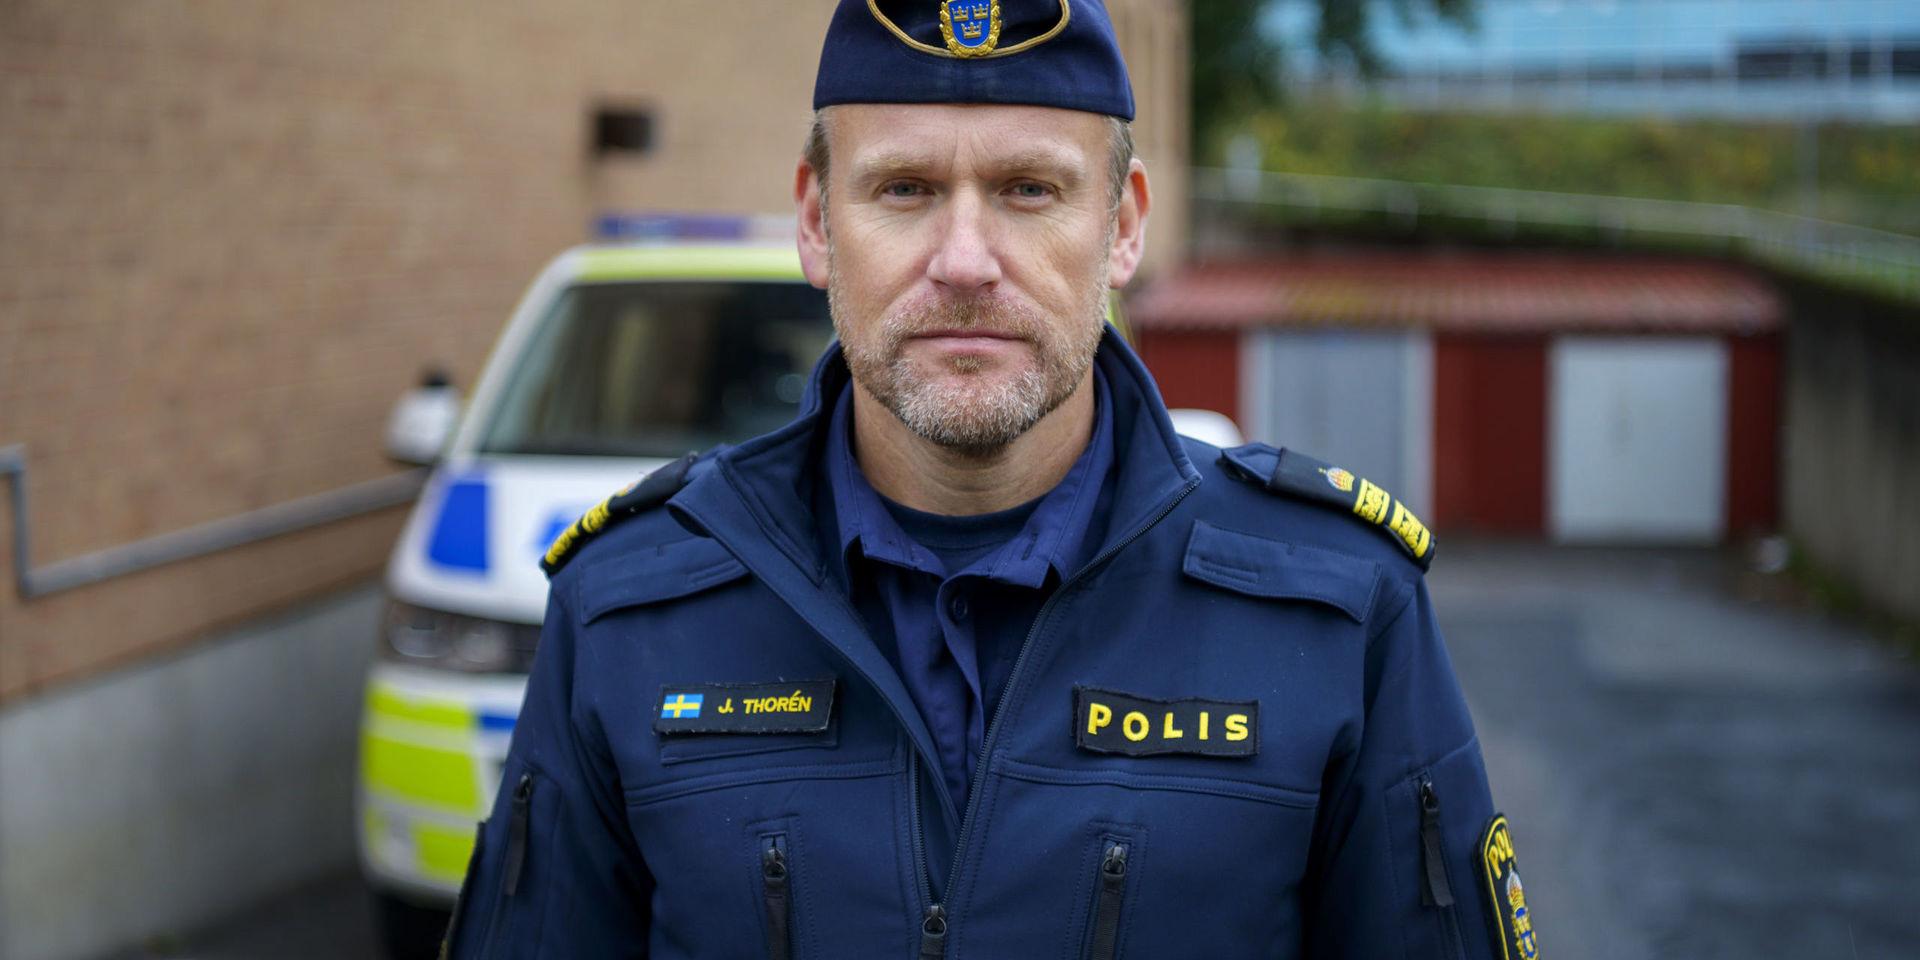 Jörgen Thorén är lokalpolisområdeschef för Hisingen. &quot;Besparingar slår ofta mot brottsförebyggande arbete&quot; säger han.